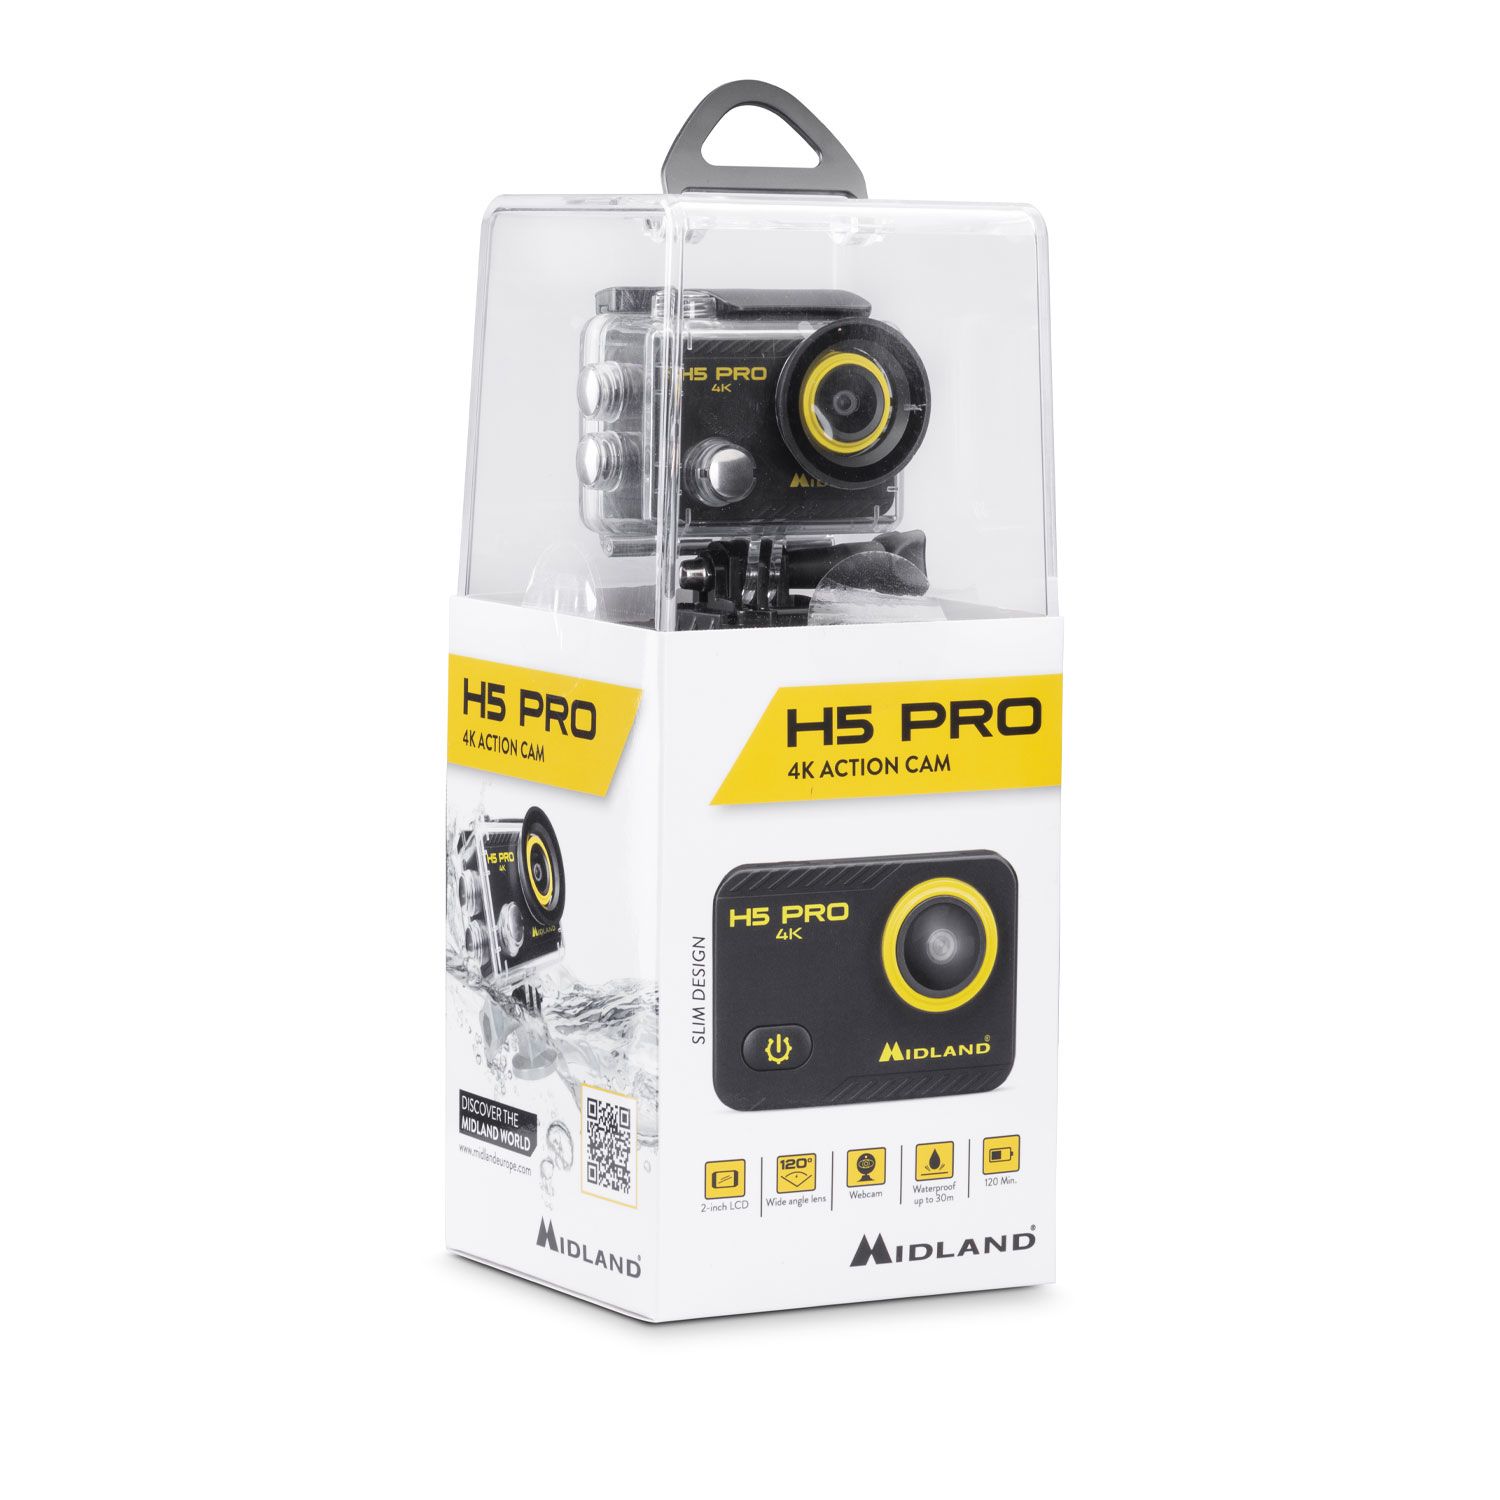 H5 Pro